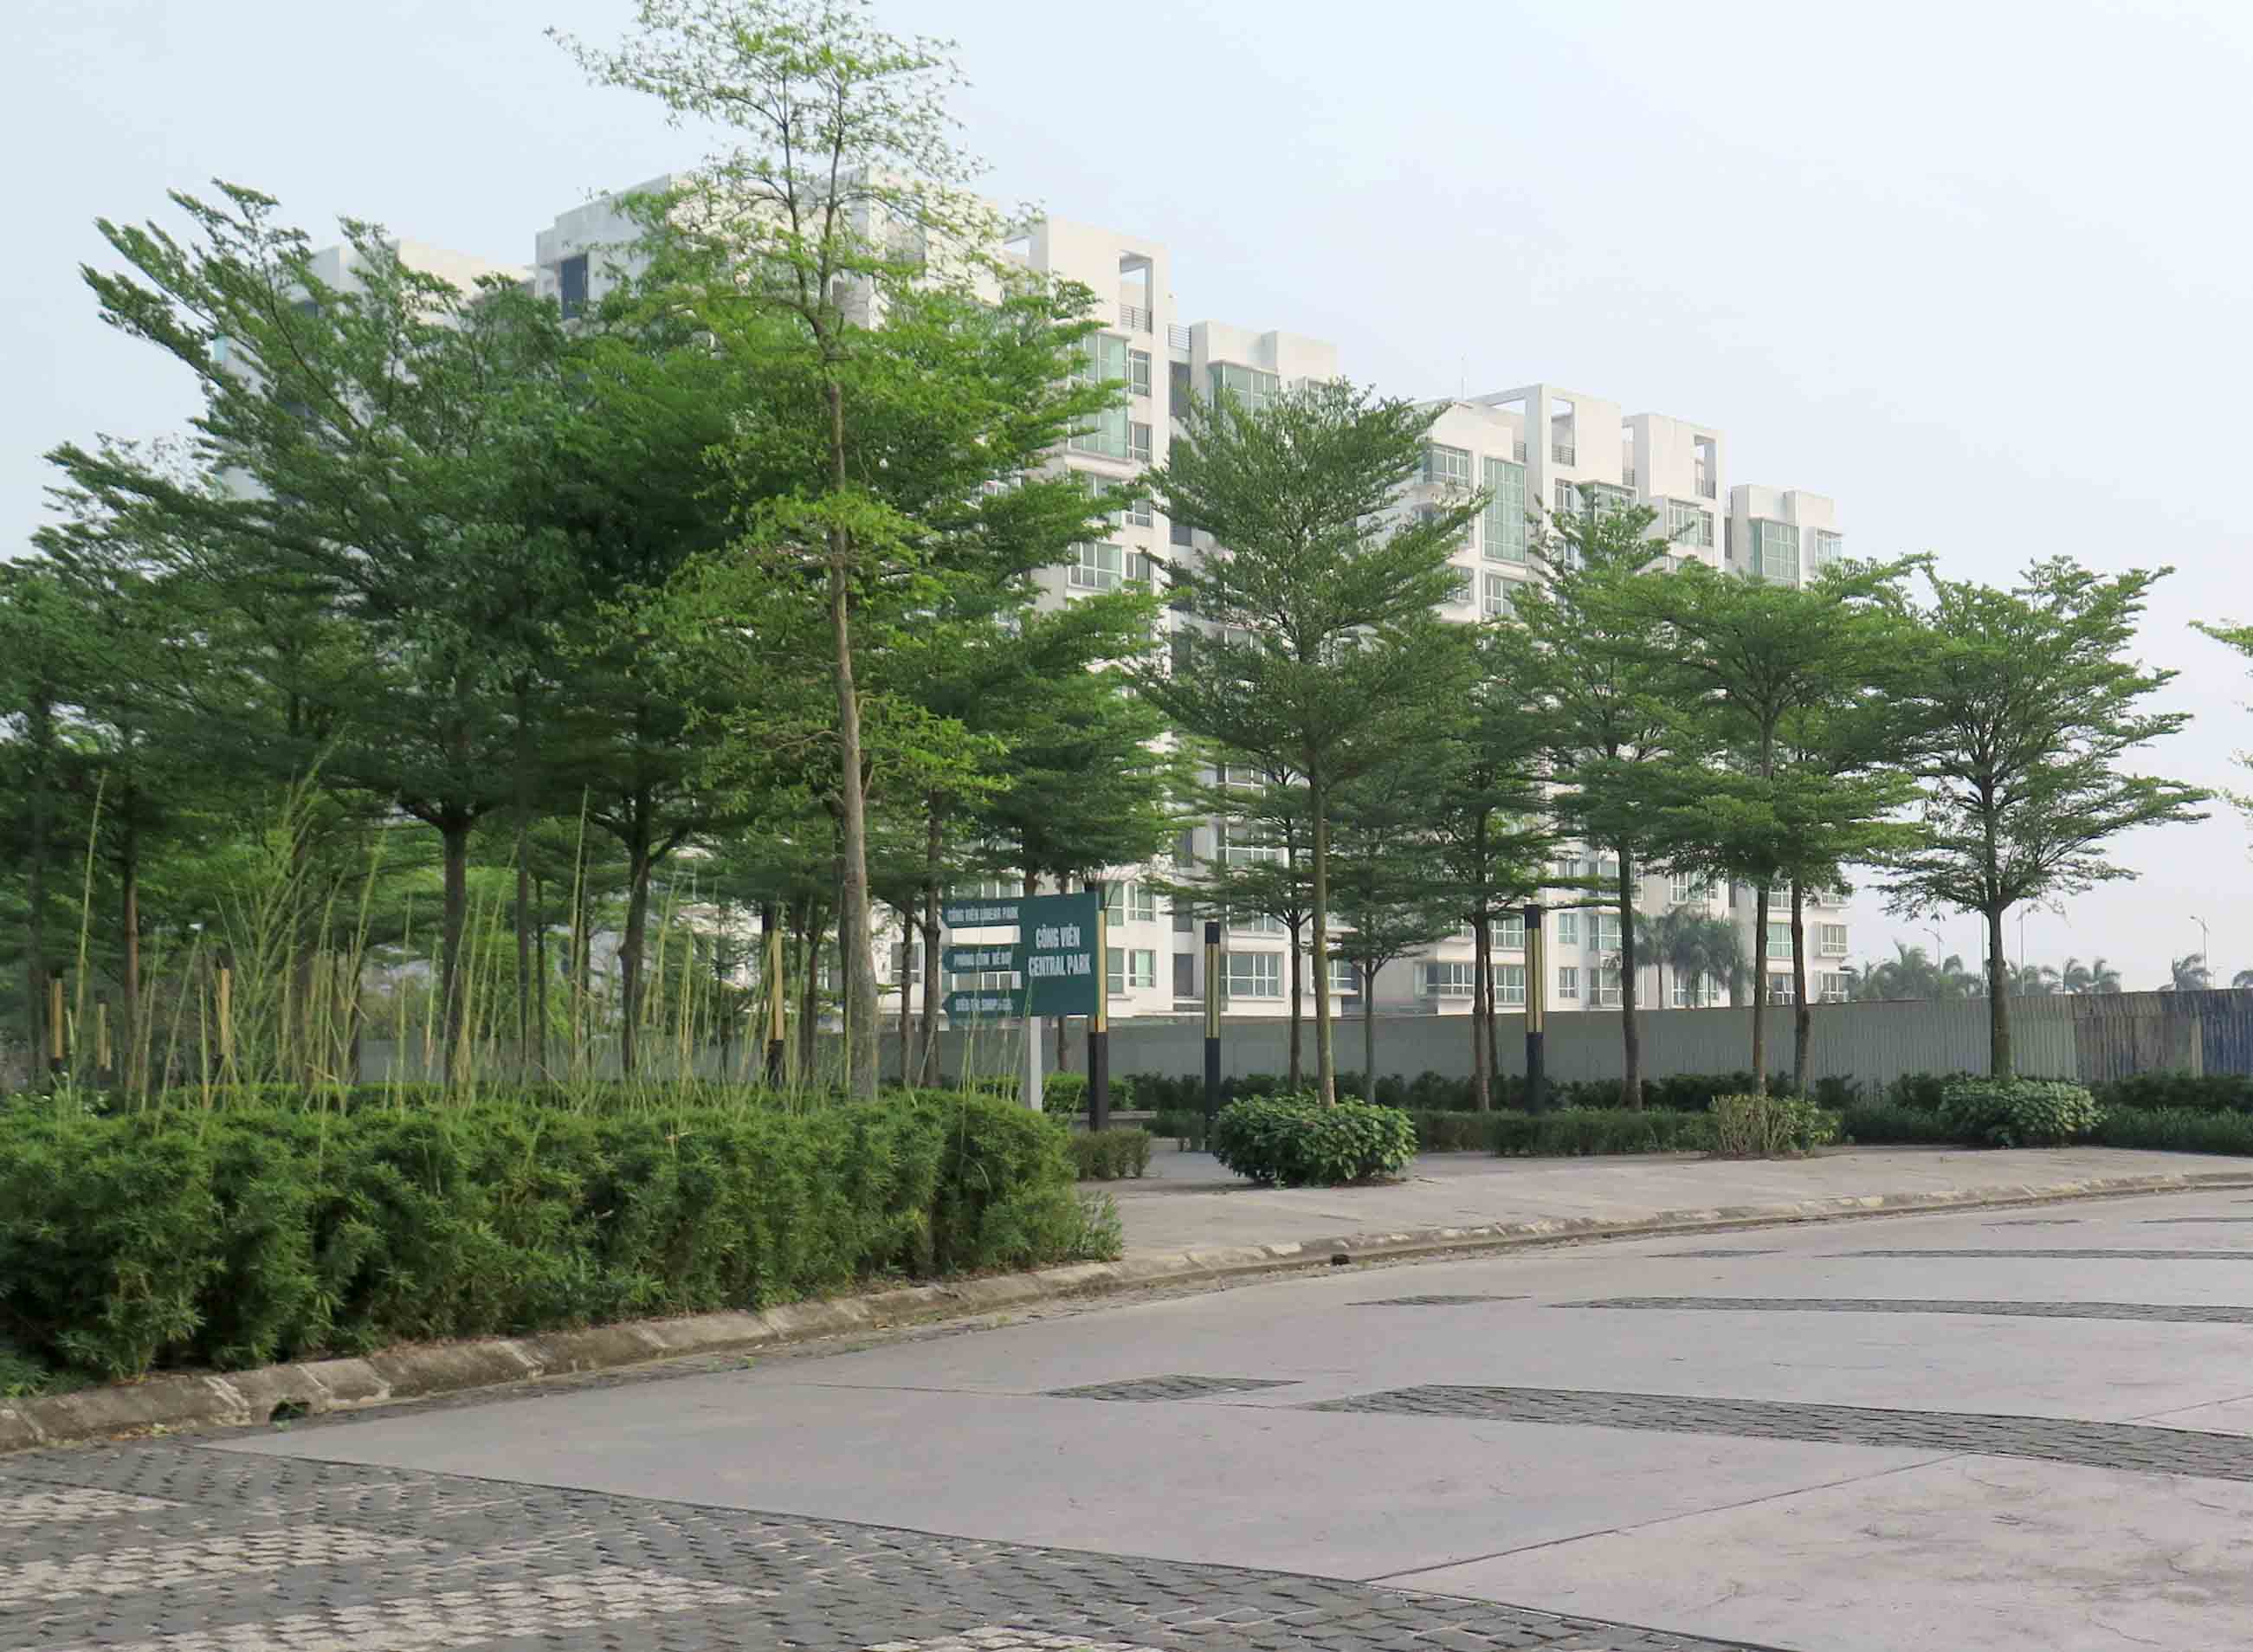 Dự án nằm ở phía Đông Bắc TP. Hà Nội, dưới chân cầu Thanh Trì, bên cạnh đường cao tốc Hà Nội - Hải Phòng. Được khởi công xây dựng từ năm 2009, đến nay, hạ tầng bên trong Dự án đã căn bản hoàn thiện.